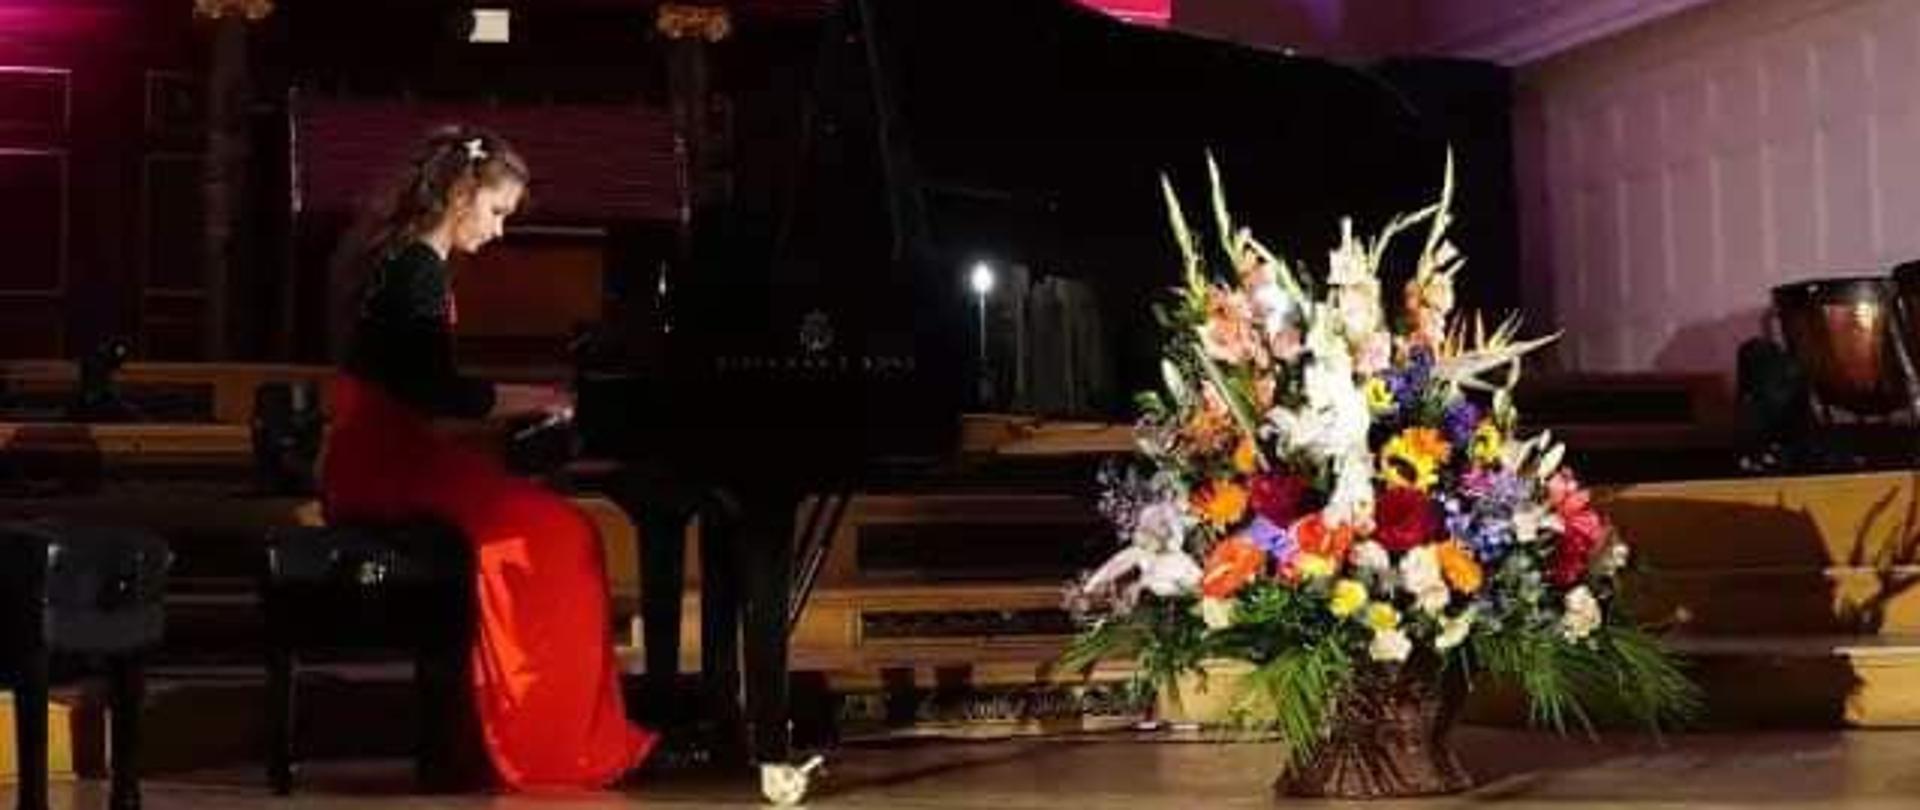 Pianistka przy fortepianie w czerwono-czarnej sukni. Przed fortepianem wielki kosz kwiatów, w tle prospekt organów.